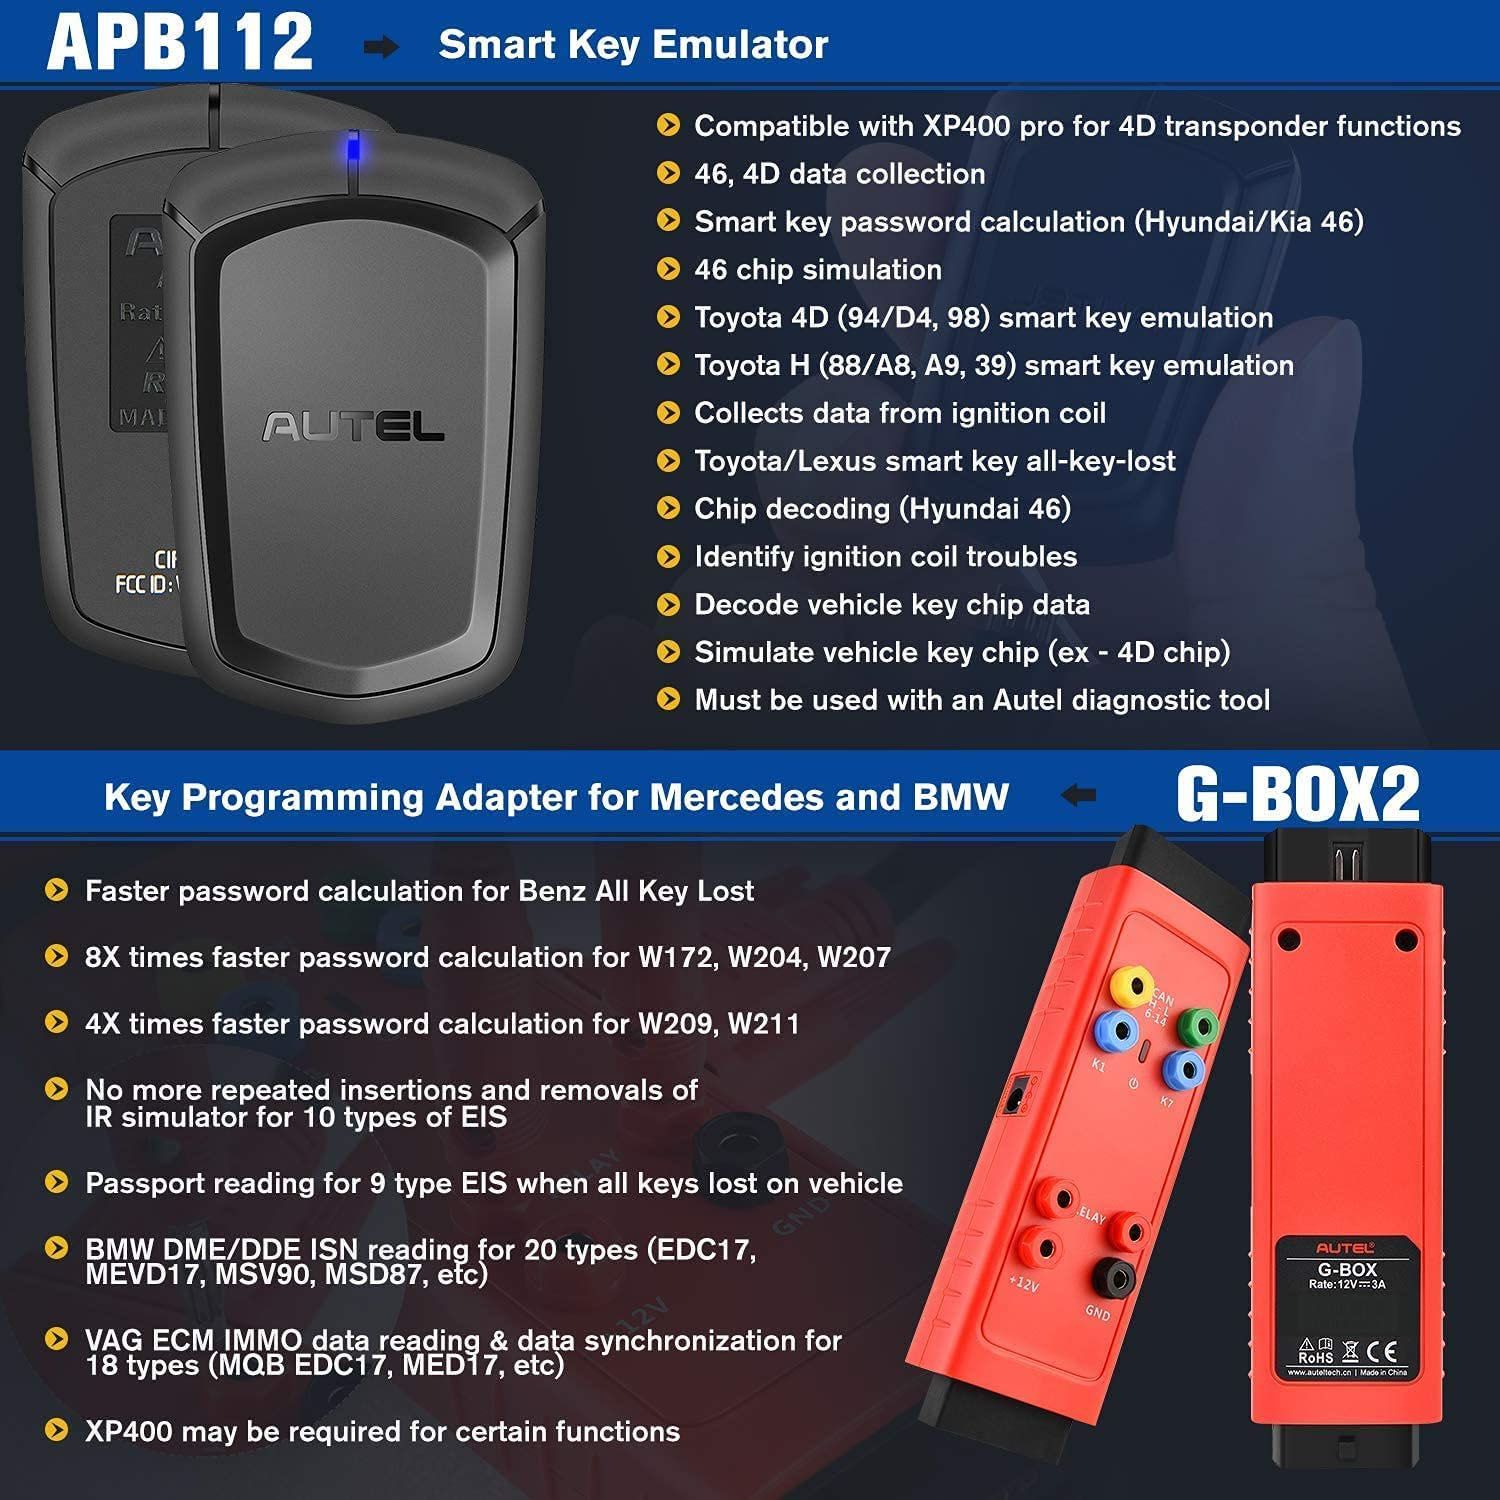  Autoel apb112 con gbox2